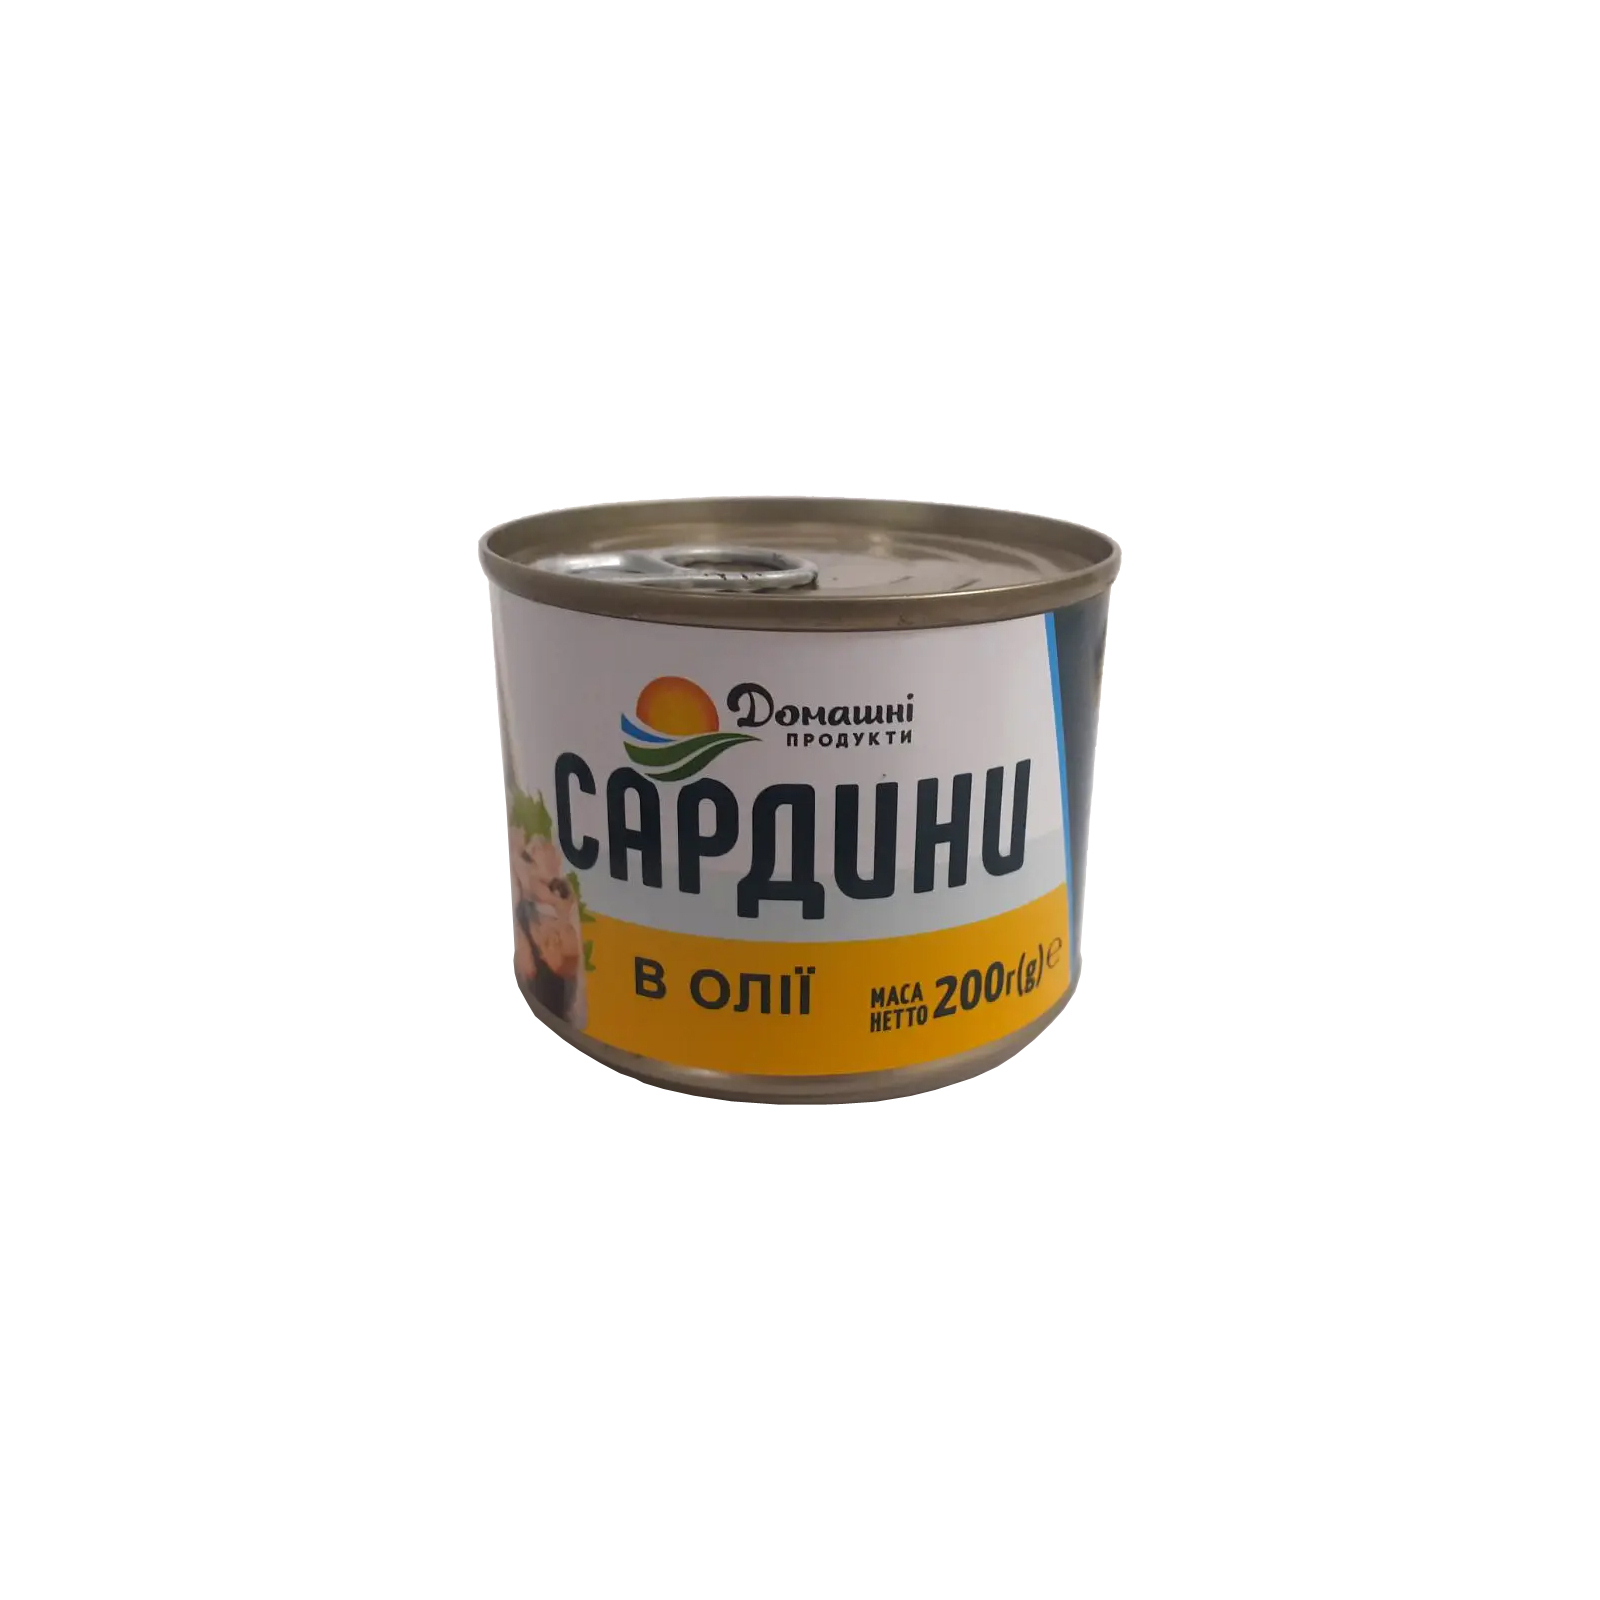 Рибні консерви Домашні продукти Сардина в олії 200 г (4820186123067)